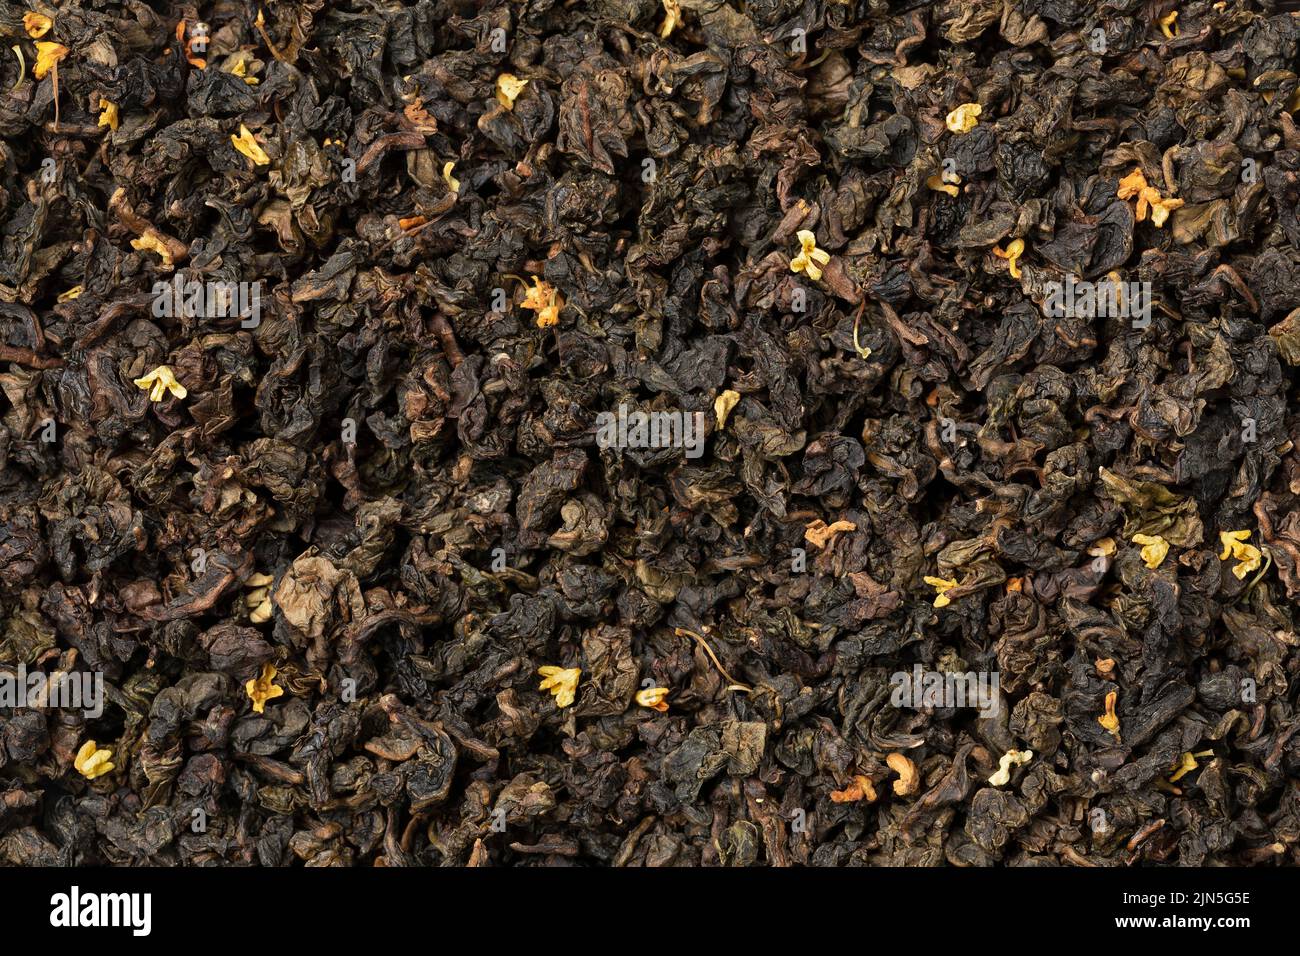 GUI hua Osmanthus té seco deja fotograma completo como fondo de primer plano Foto de stock